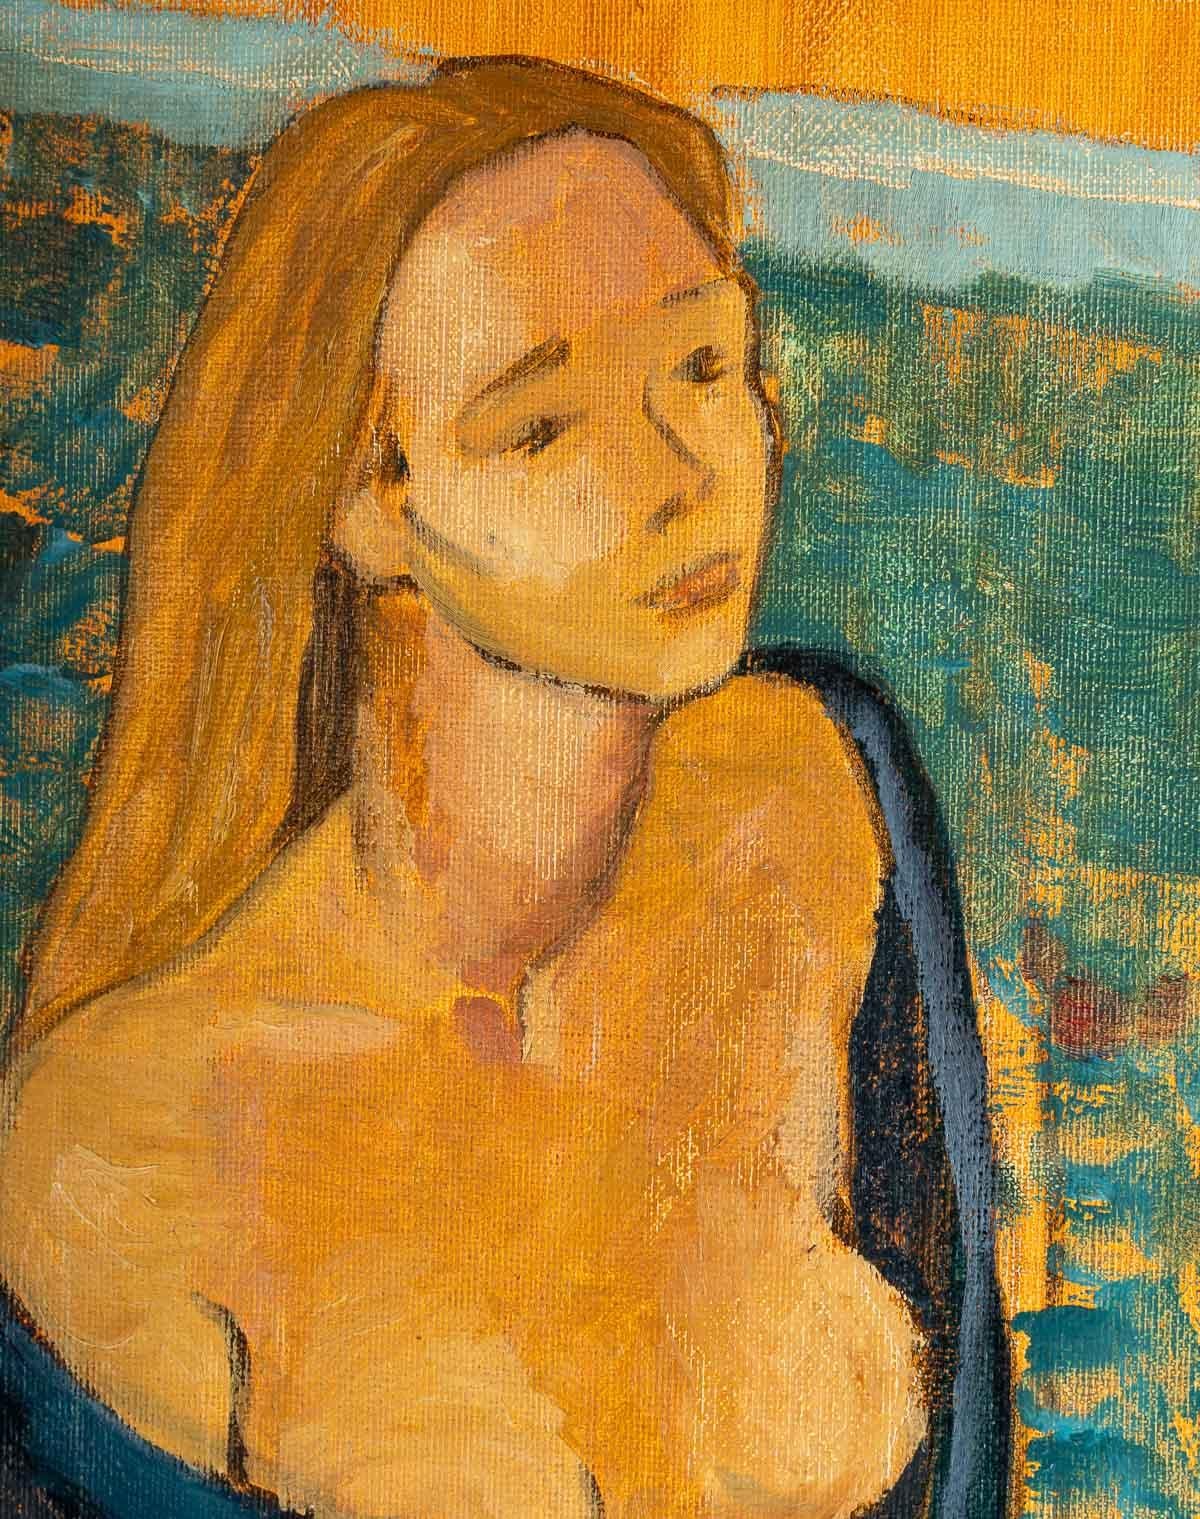 Peinture d'une femme, 20e siècle
Peinture, huile sur toile, d'une jeune femme à la mode en peignoir, 20e siècle
Dimensions : H : 65 cm, L : 50 cm, P : 2 cm.